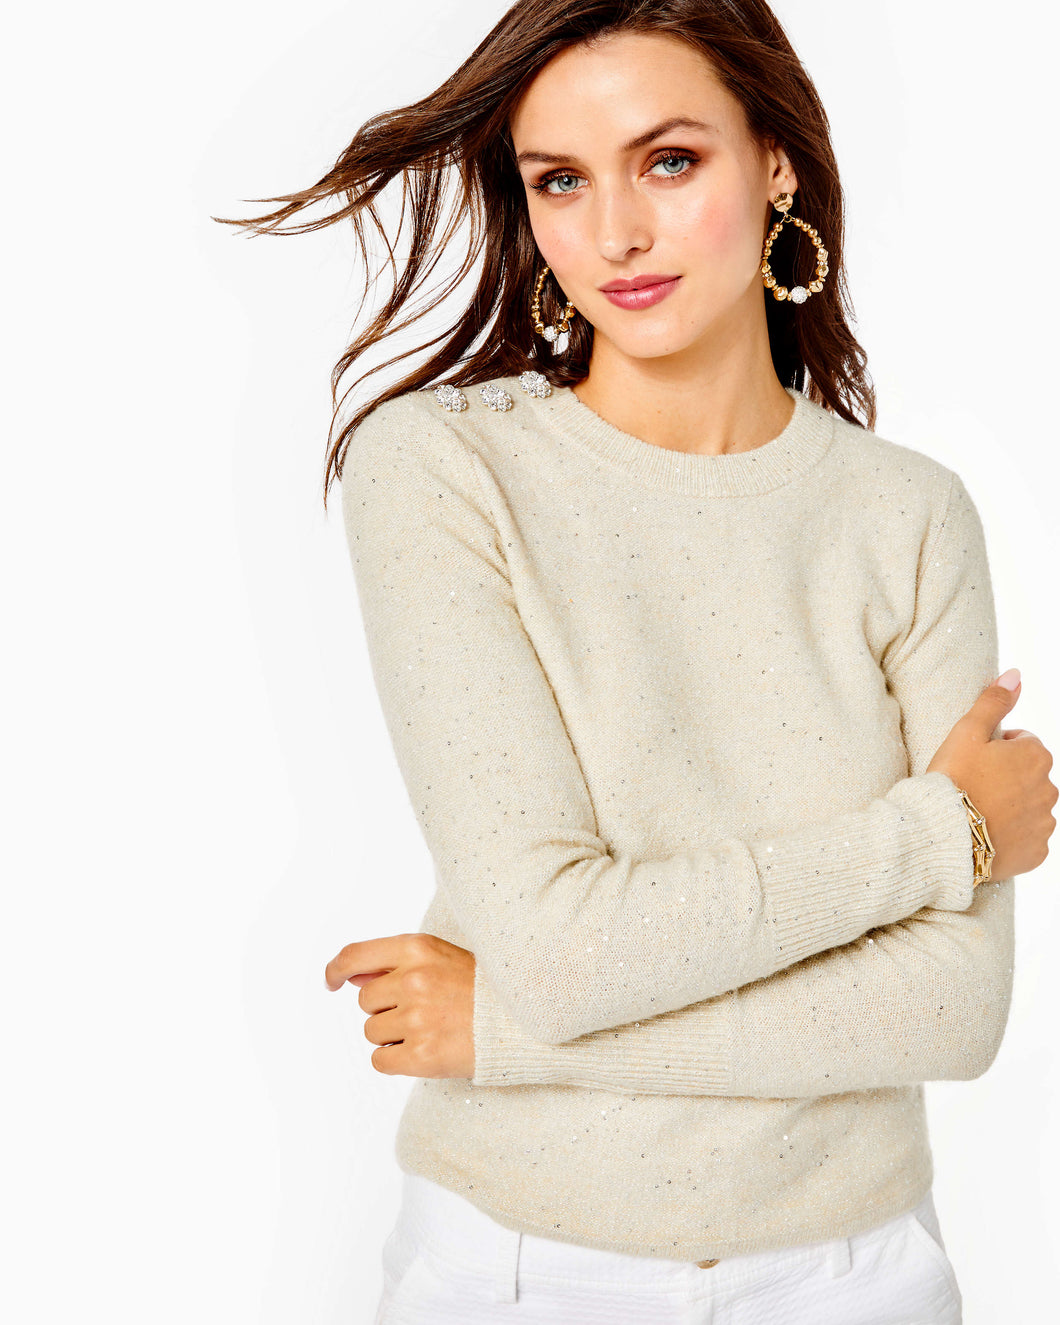 Morgen Sequin Sweater - Coconut Metallic